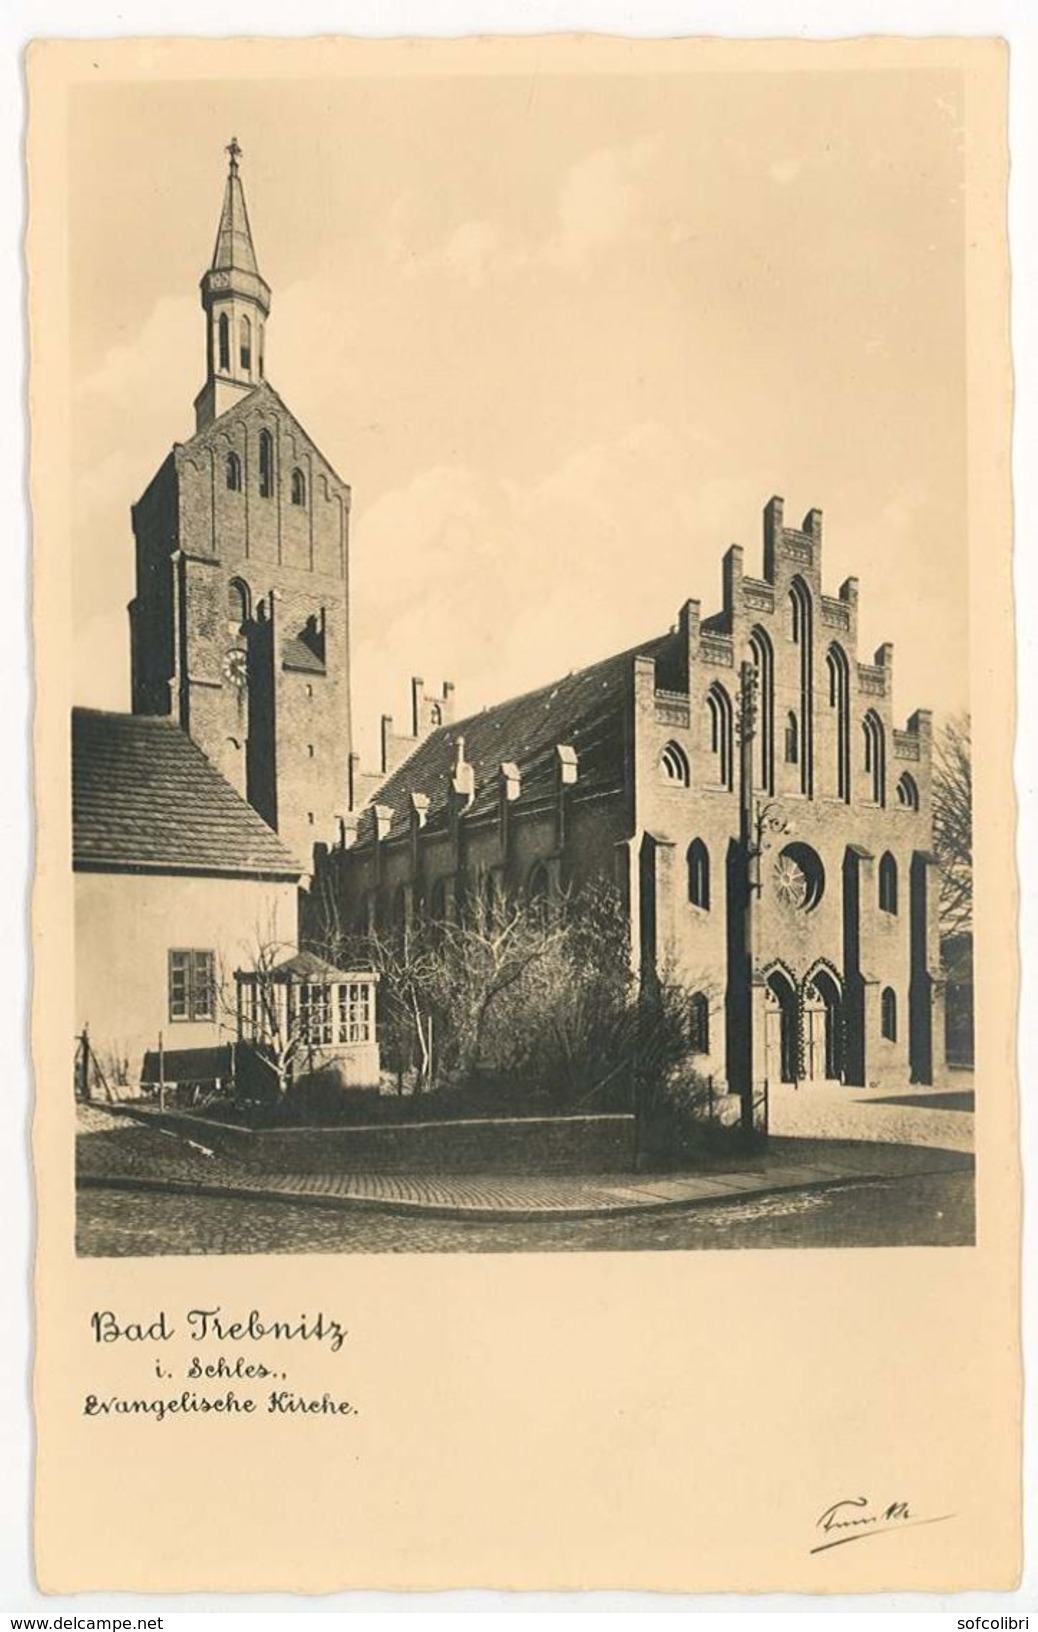 BAD TREBNITZ -- Evangelische Kirche - Poland